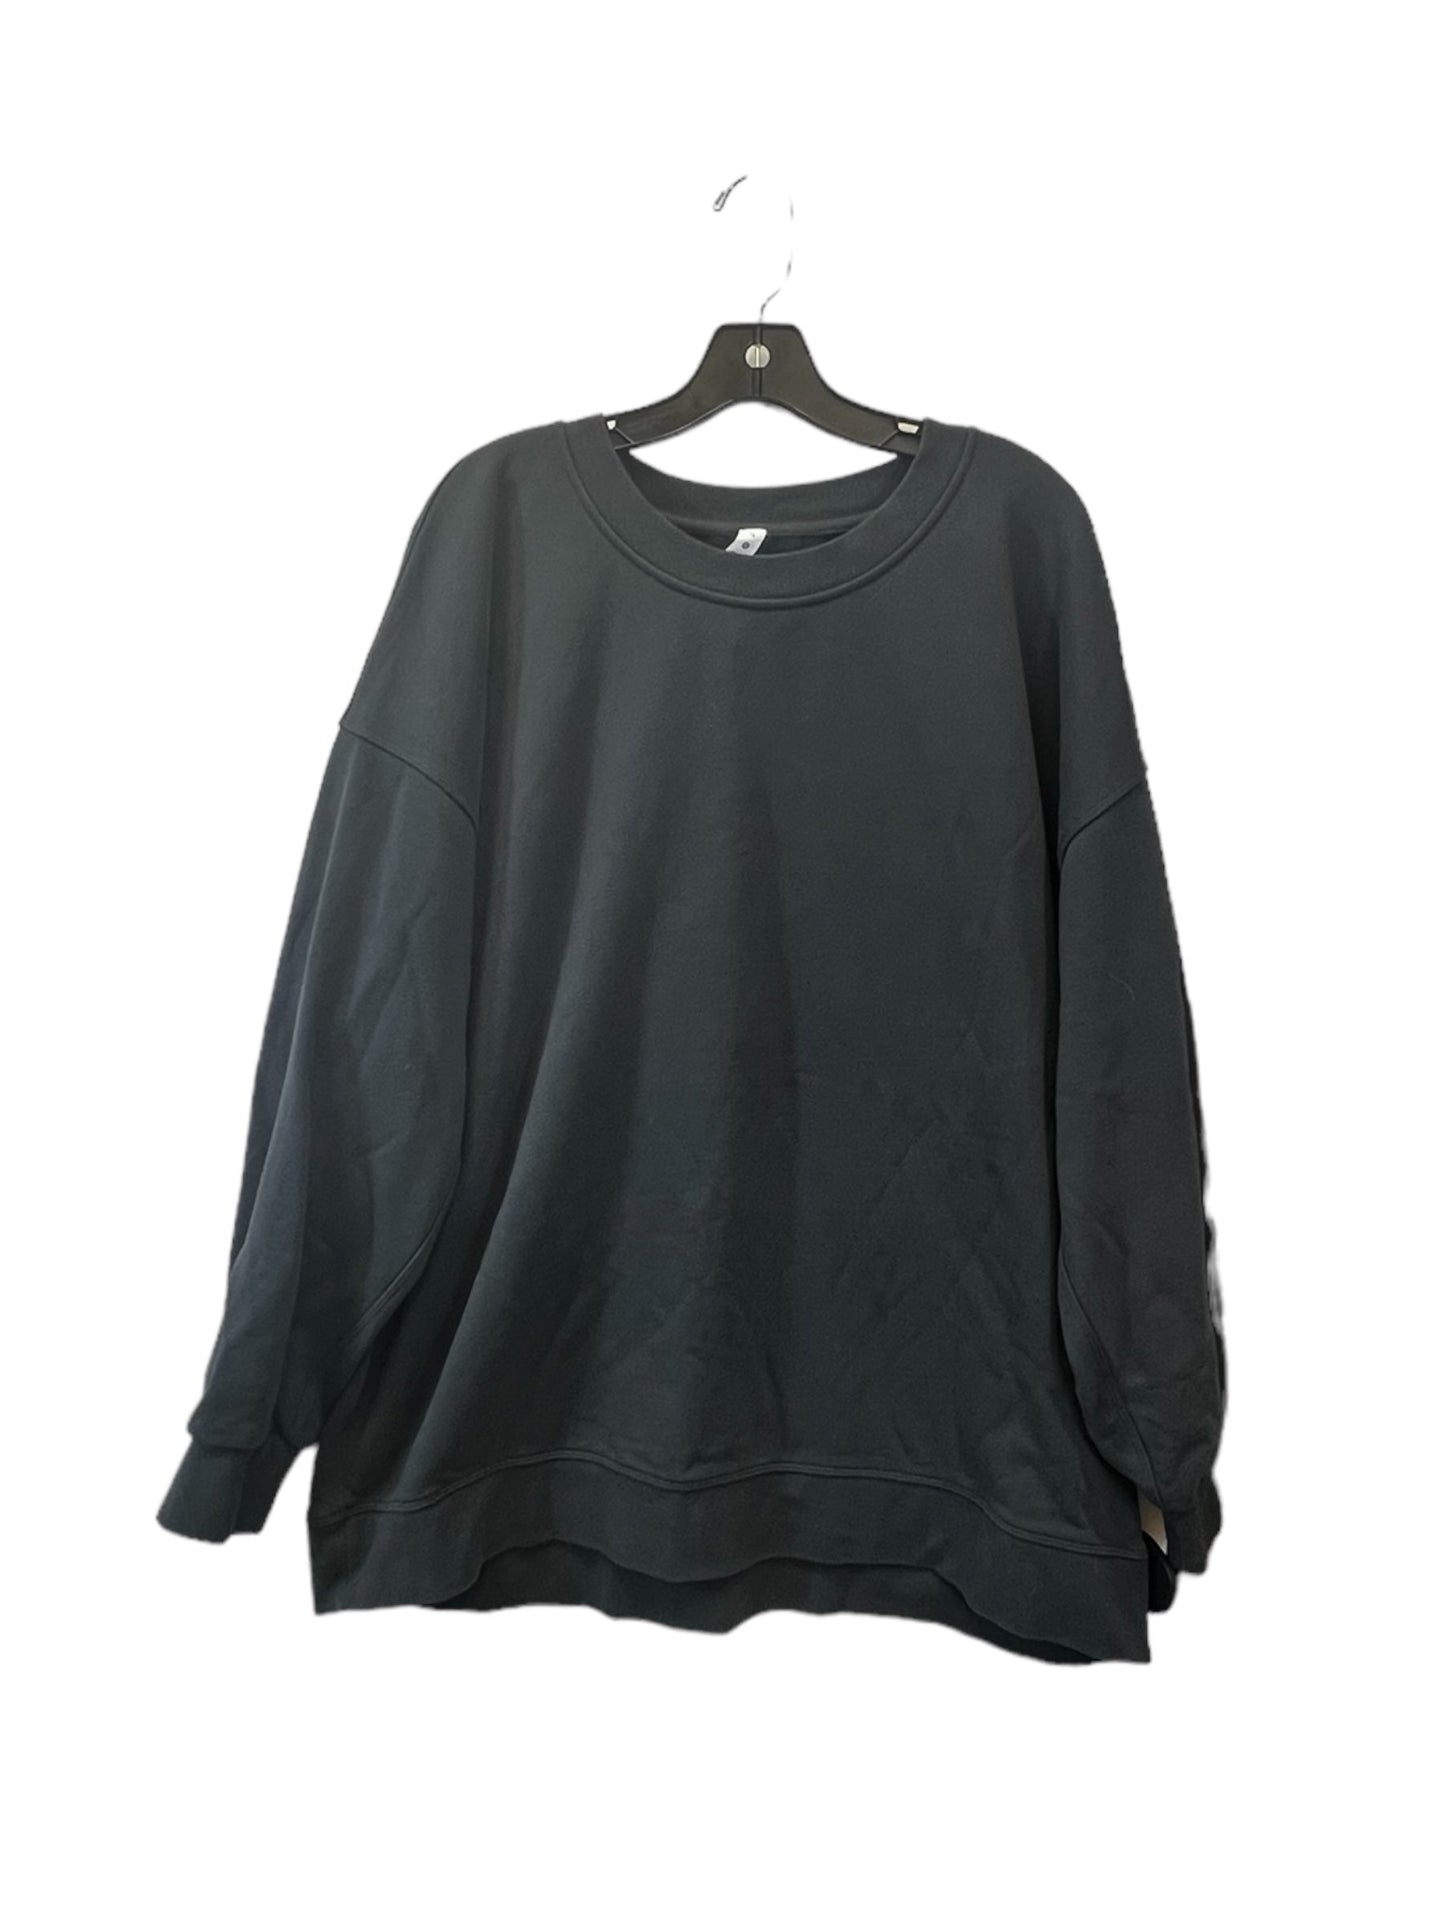 Grey Athletic Sweatshirt Crewneck Lululemon, Size 16